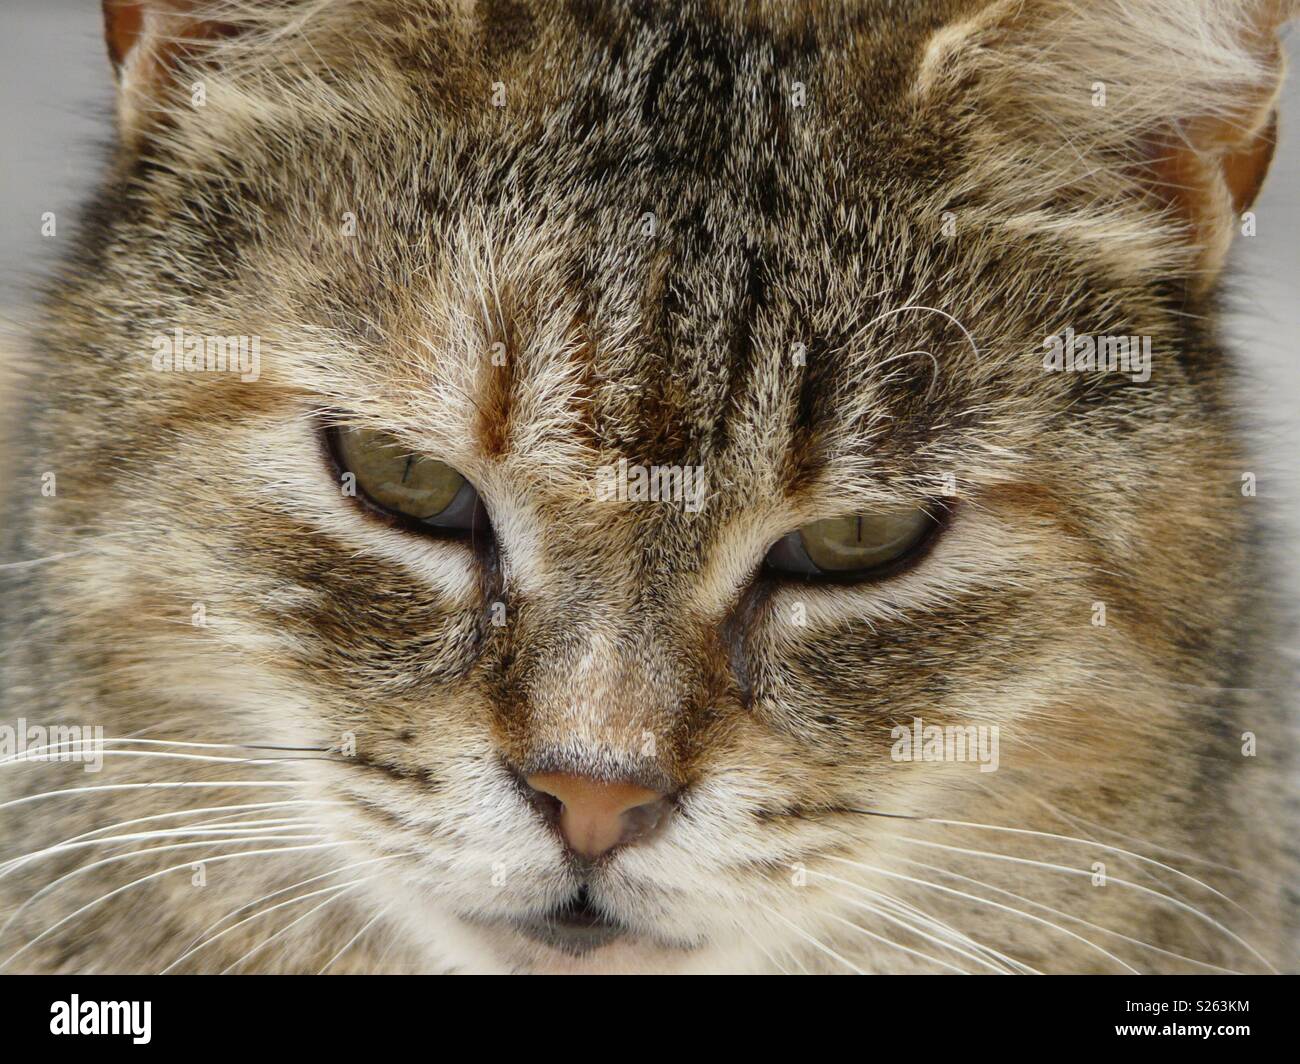 Cat face close up Stock Photo